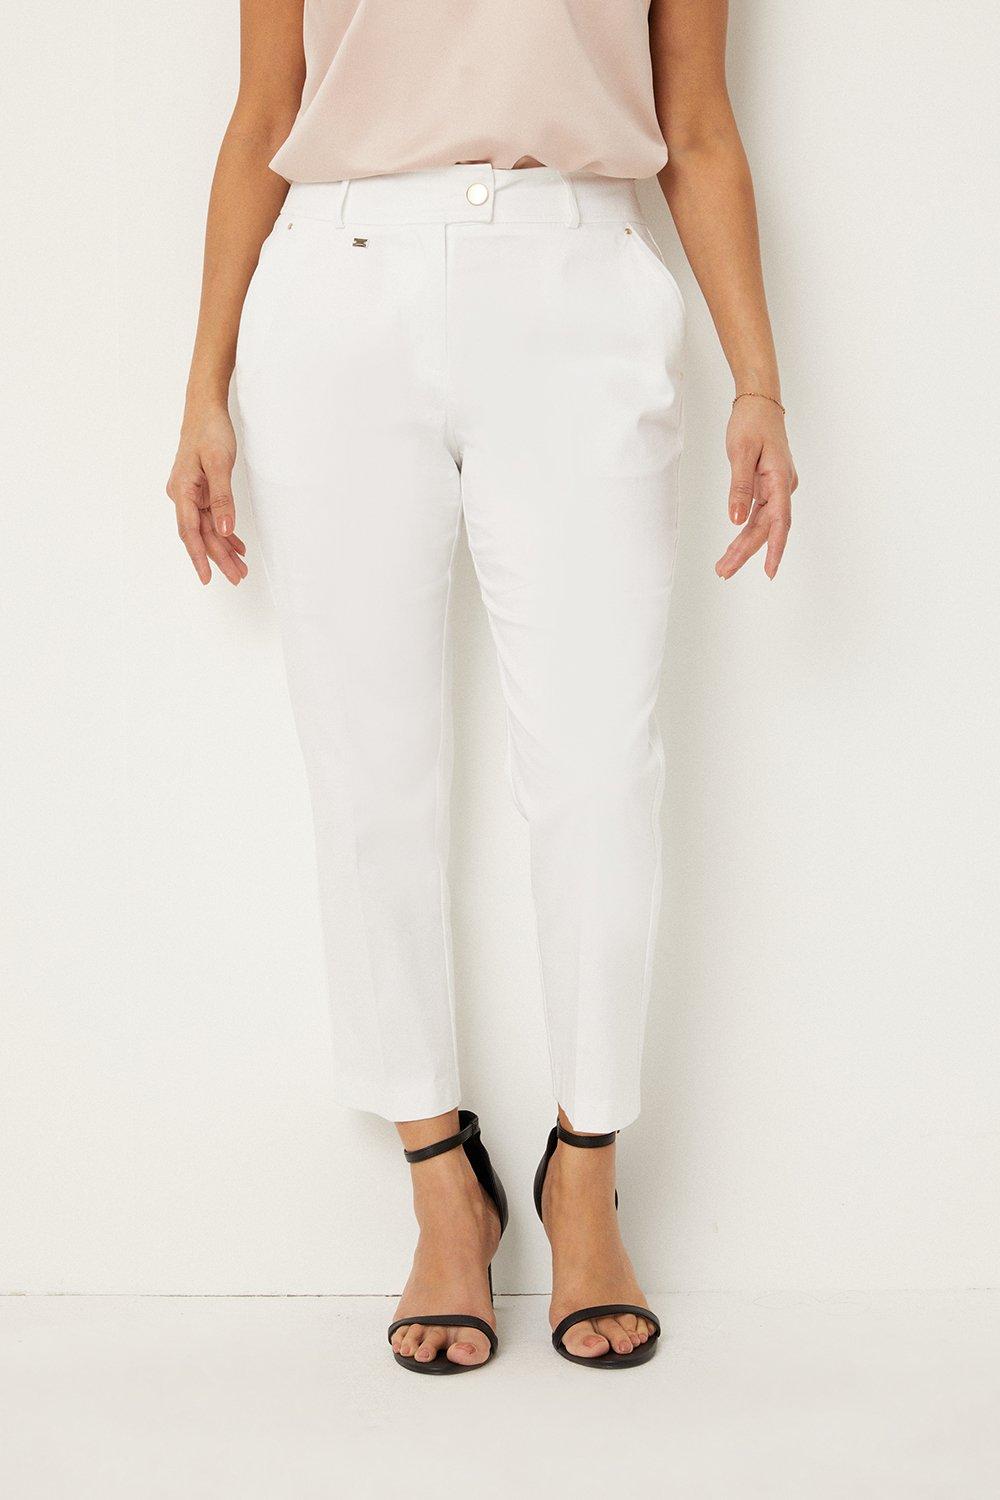 Укороченные брюки стрейч для миниатюрных размеров Wallis, белый